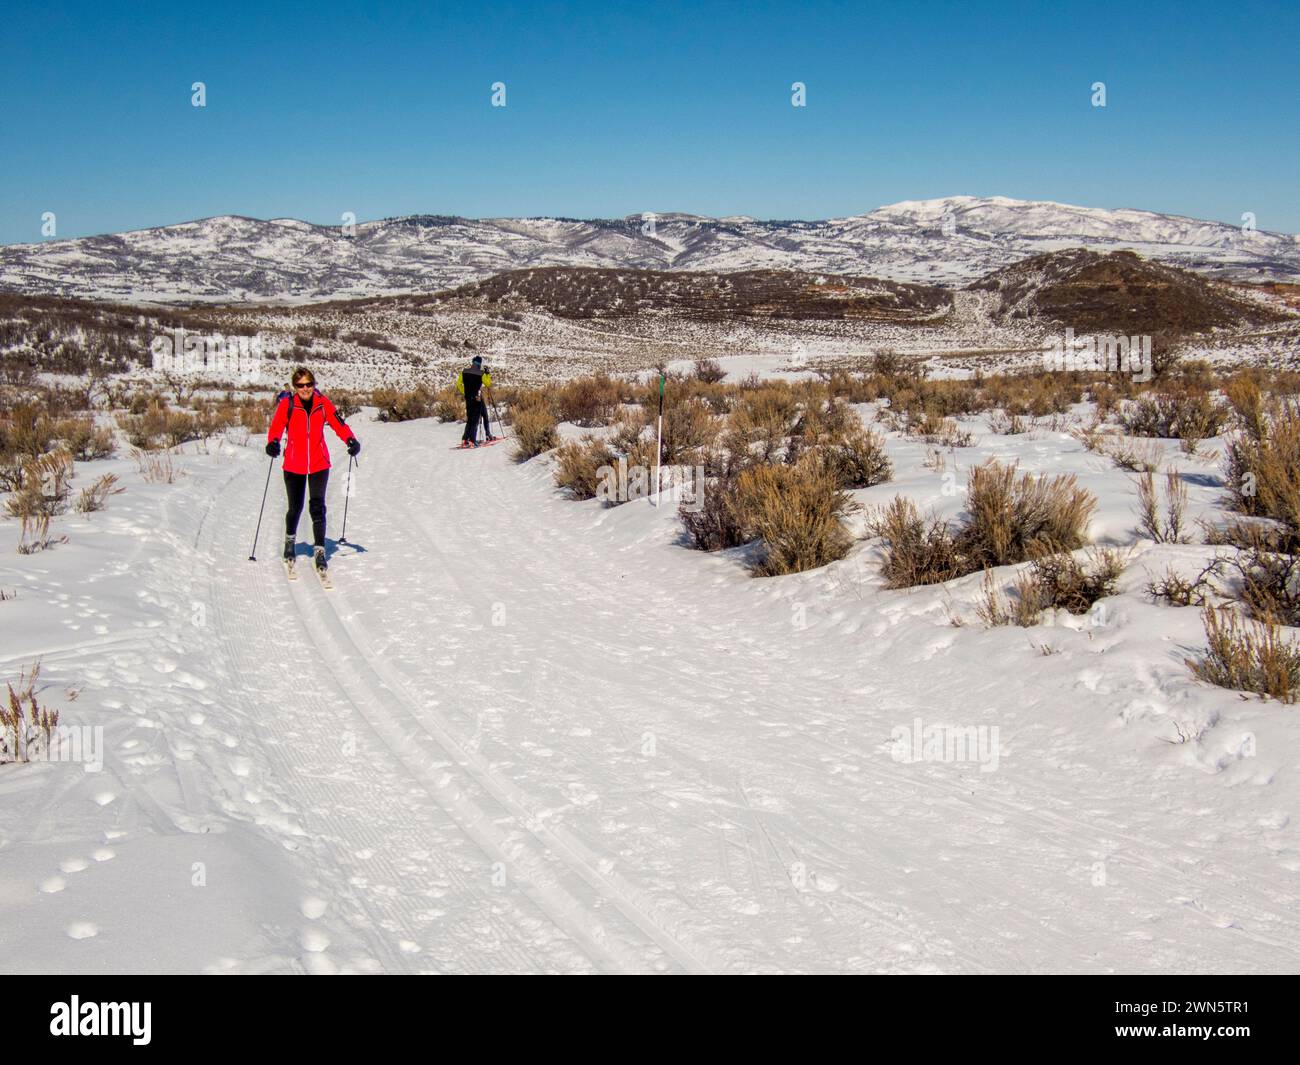 Ambientazione invernale con gente che pratica sci di fondo nell'alto deserto con pennello e neve a Round Valley vicino a Park City, Utah, Stati Uniti. Foto Stock